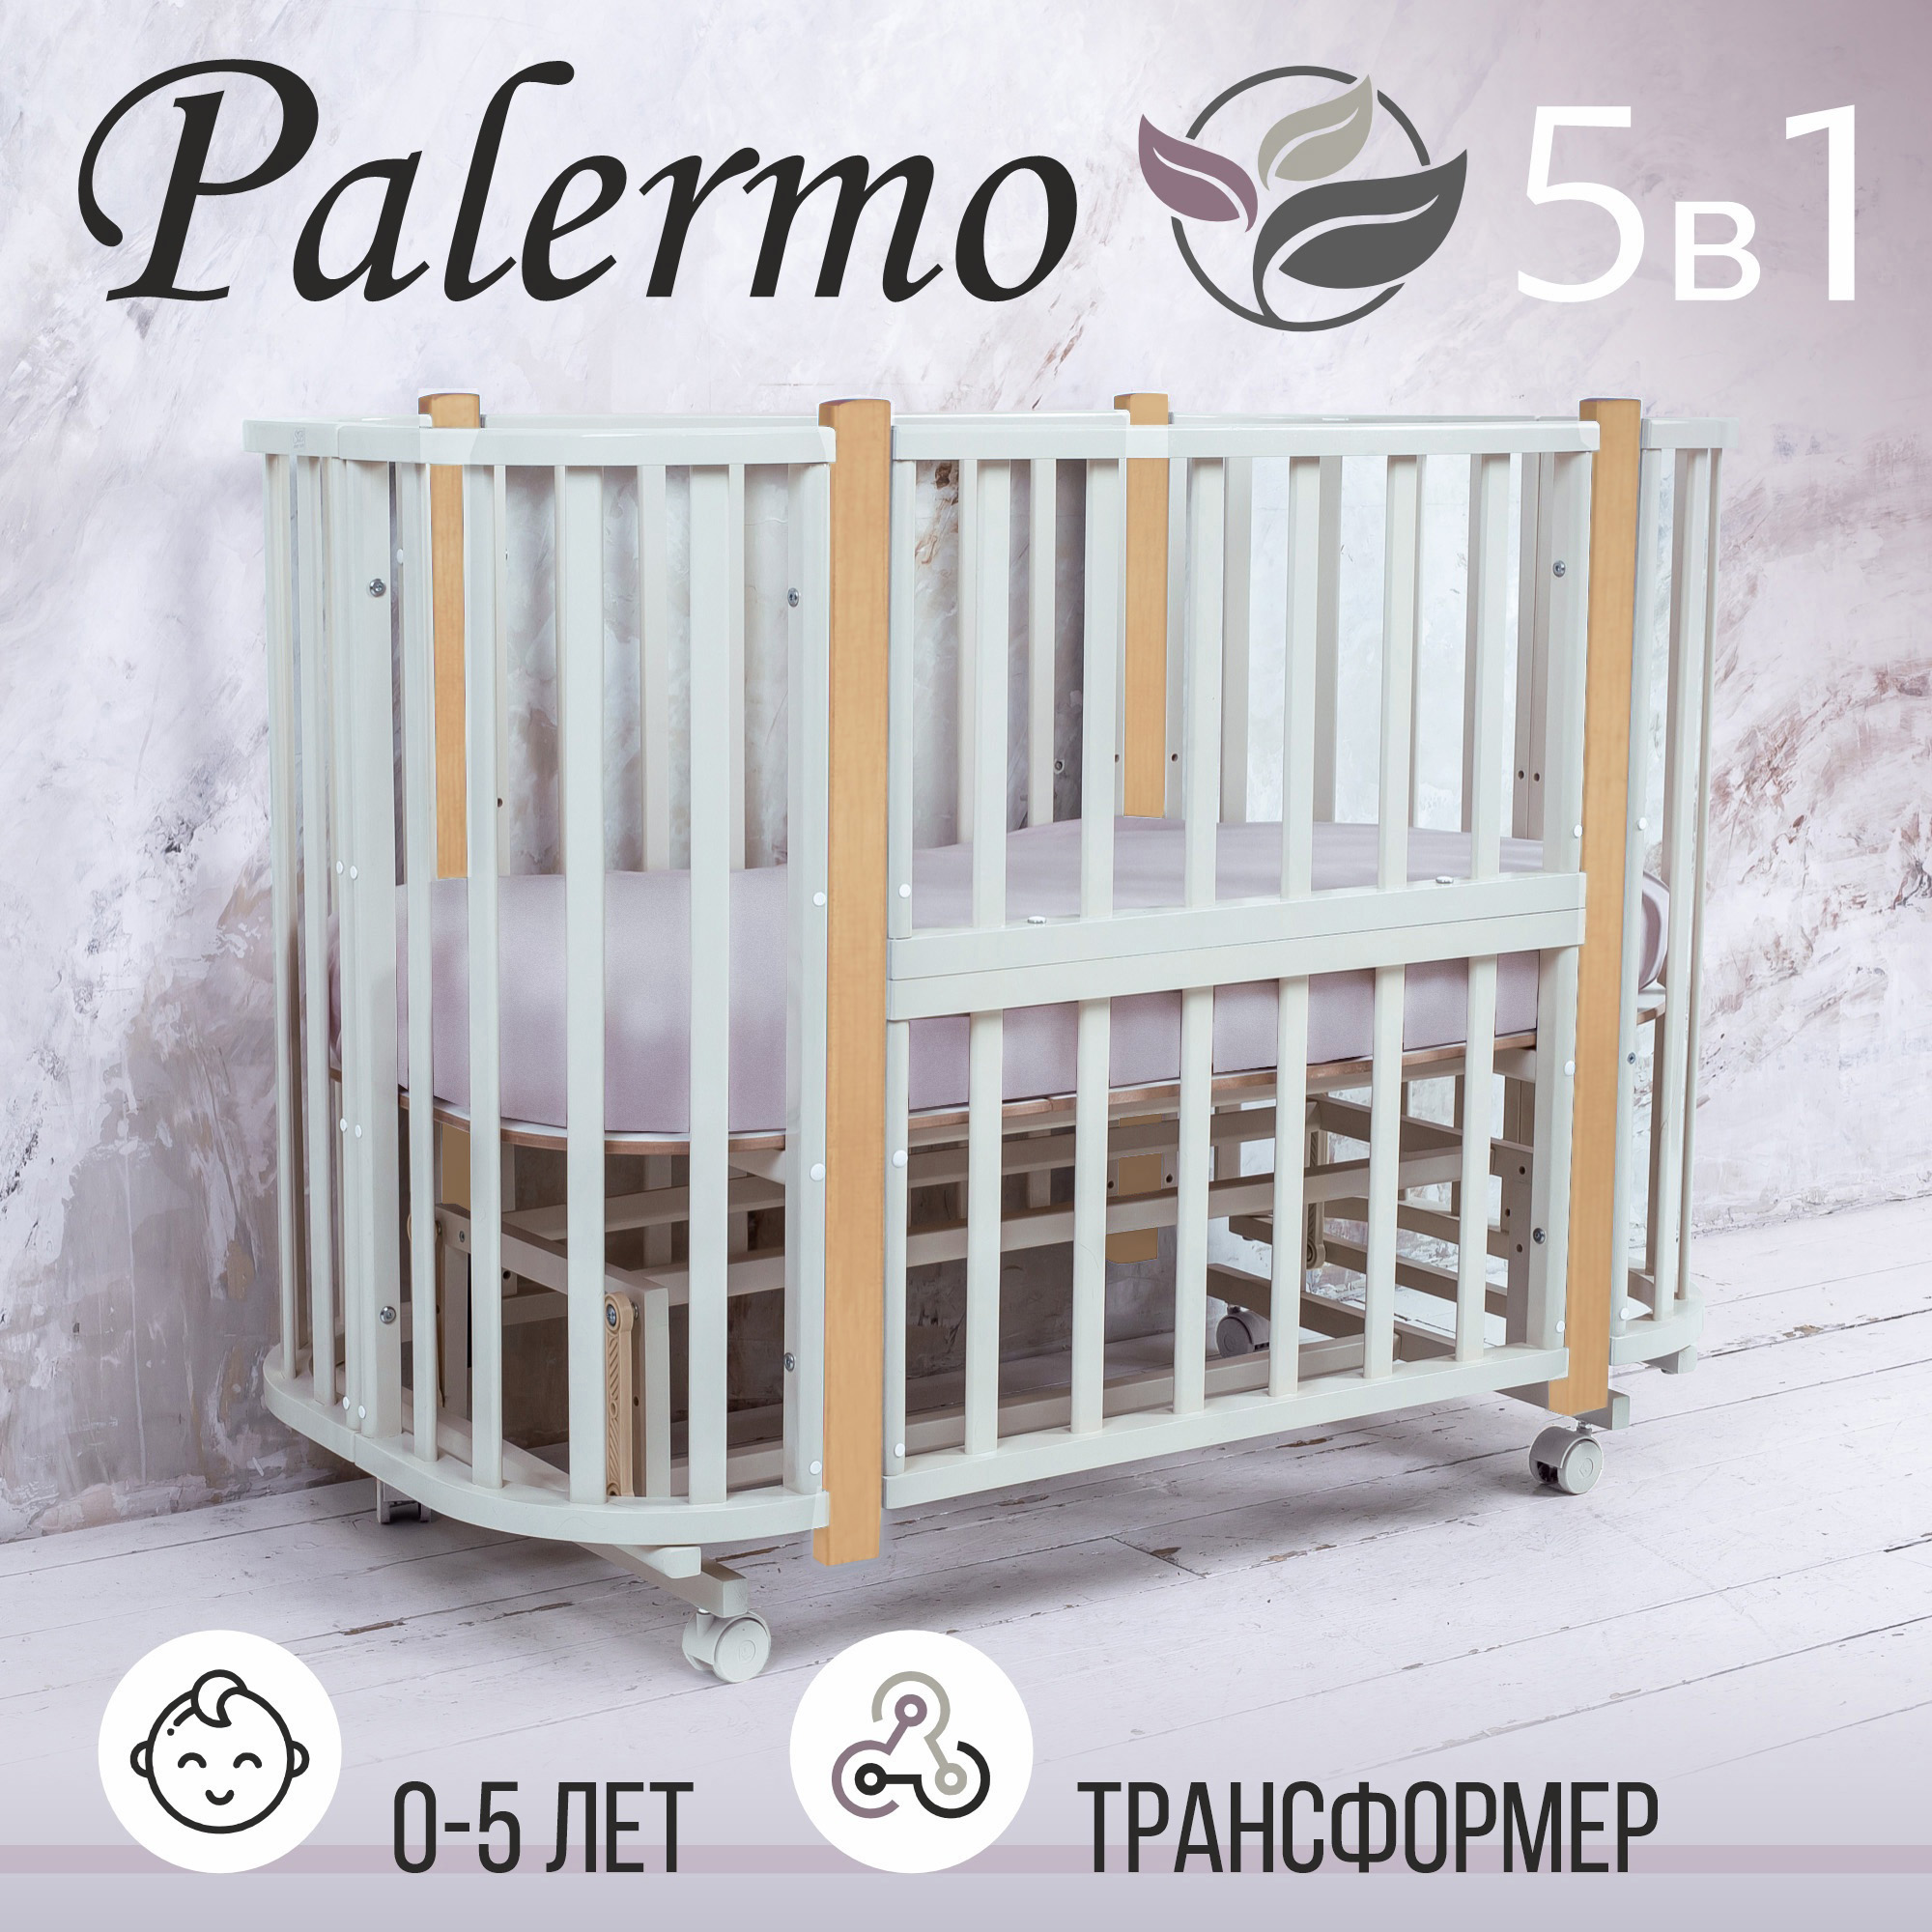 Кровать-трансформер Sweet Baby 5в1 с маятником Palermo Bianco/Naturale (белый/натуральный) кровать трансформер sweet baby 5в1 с маятником palermo bianco naturale белый натуральный